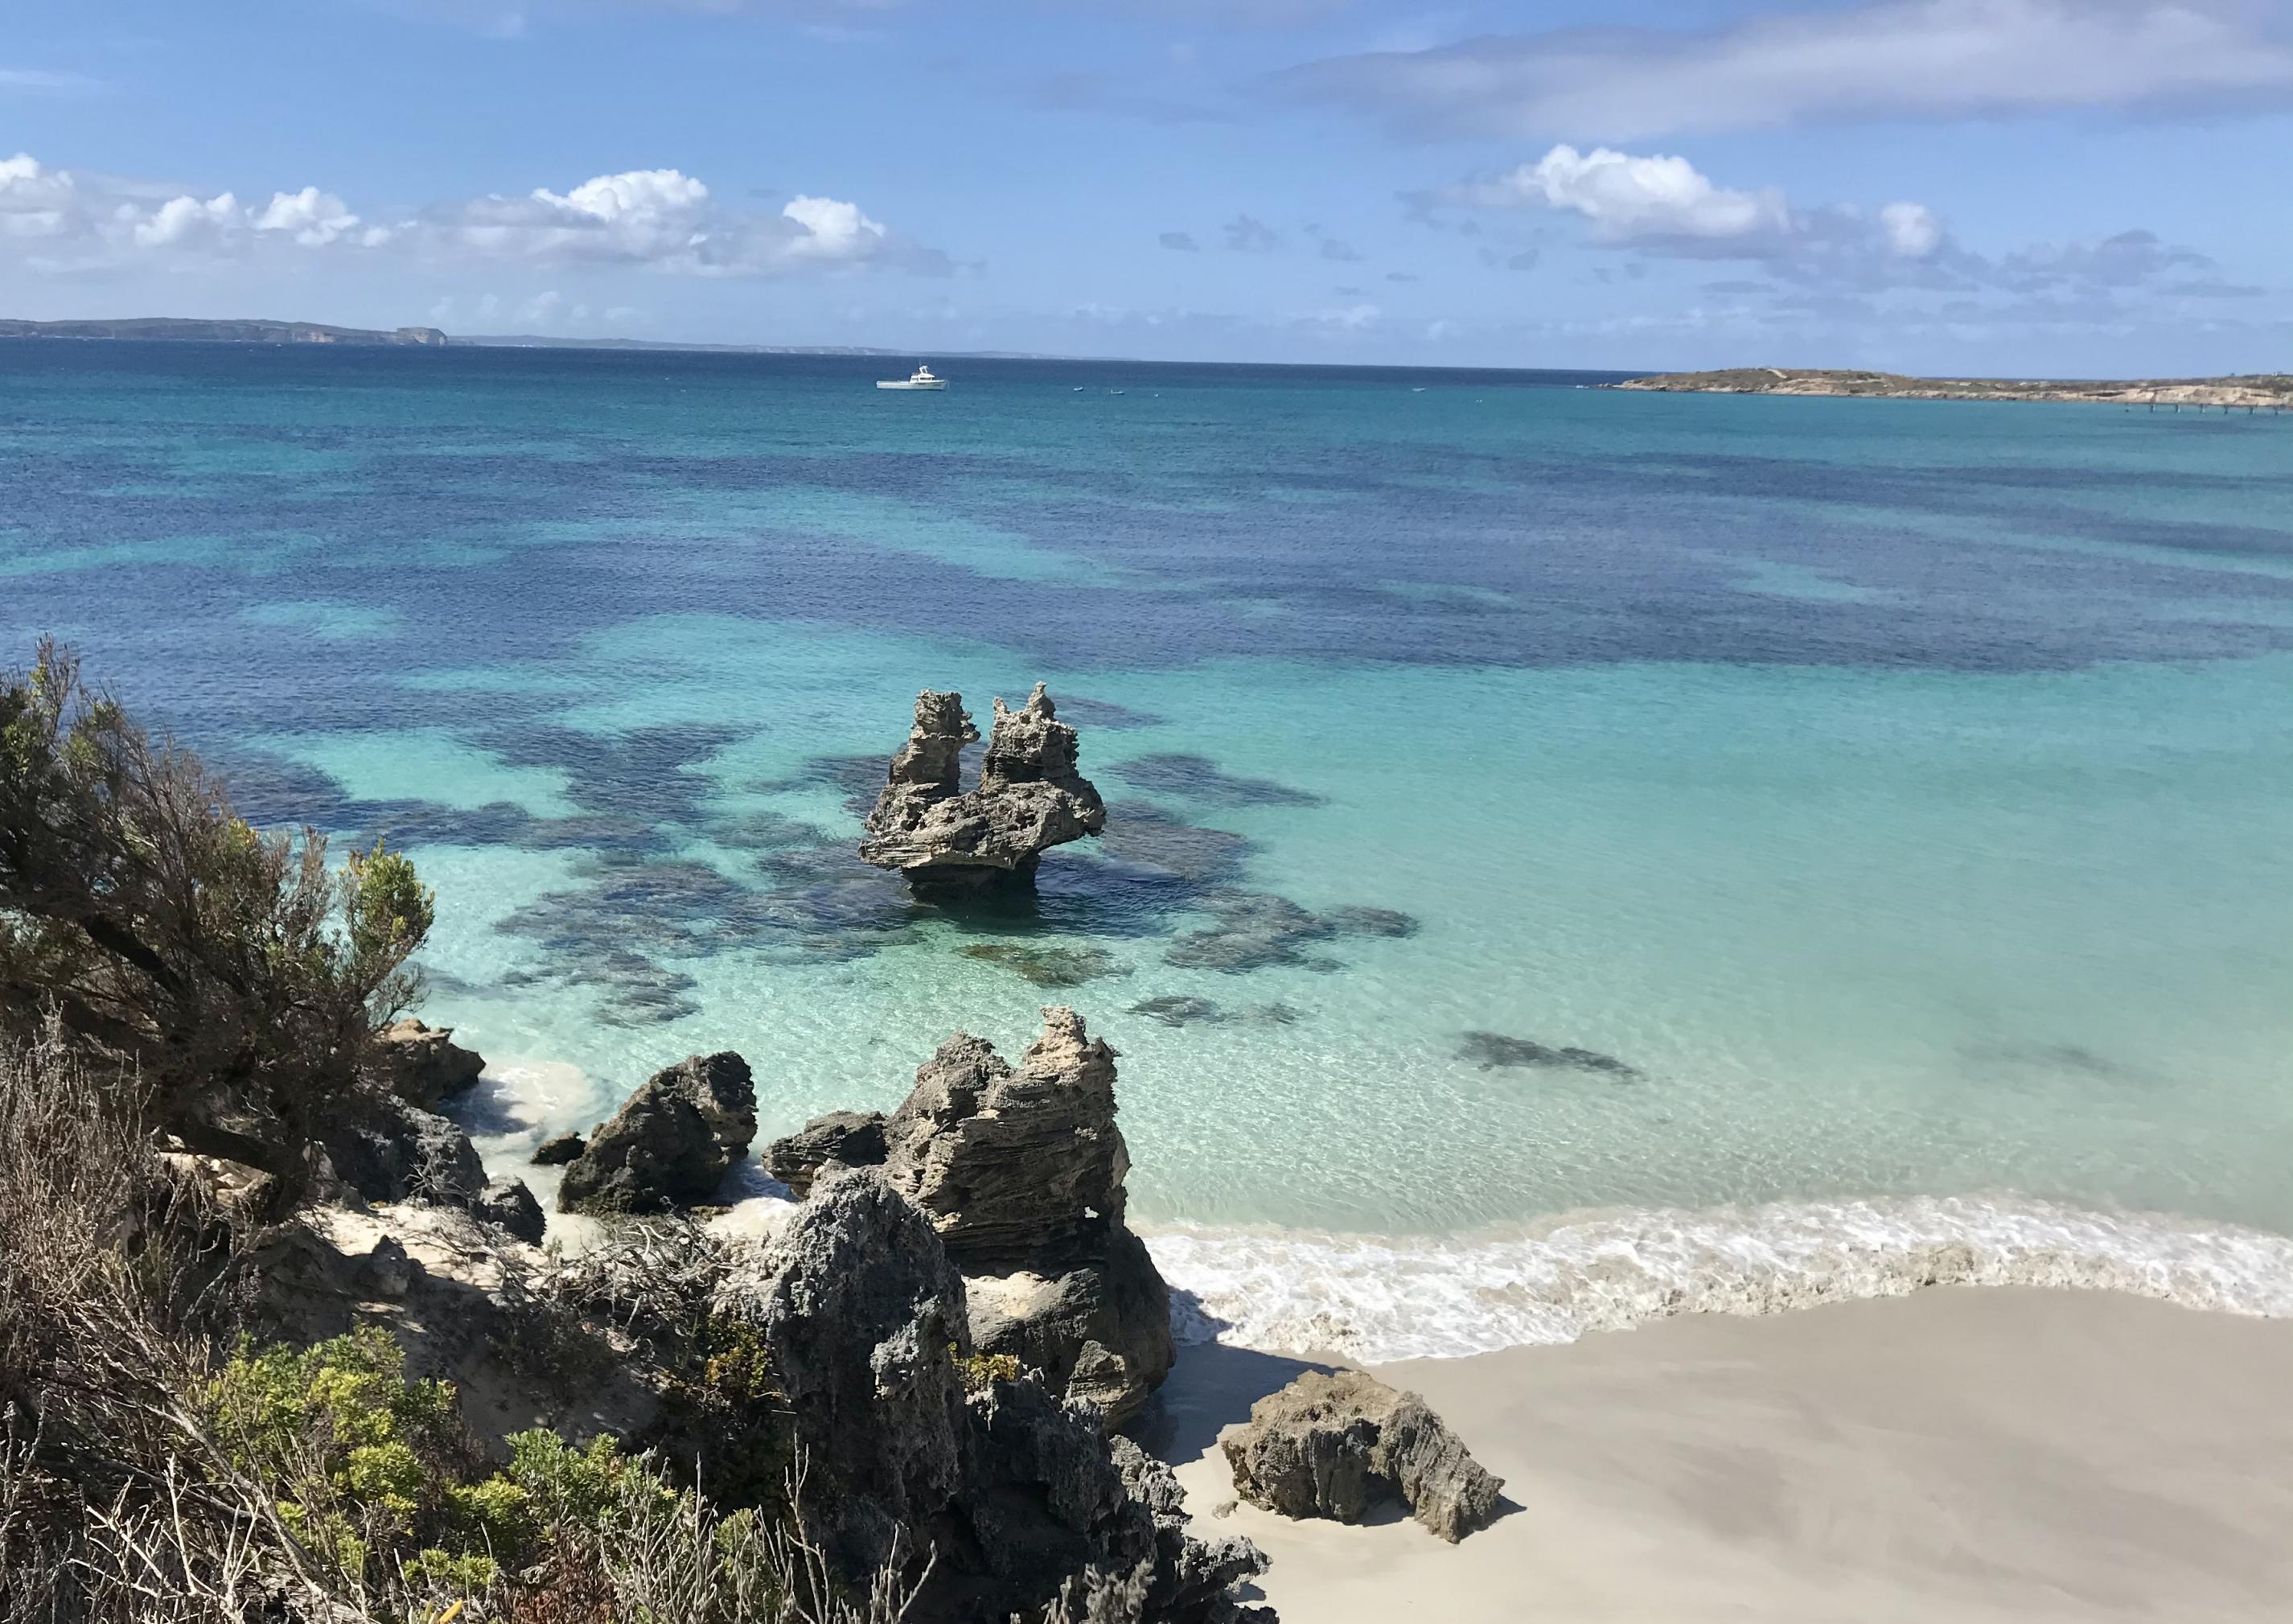 Türkisblaues Wasser, weißer Sand, klare Luft – Vivonne Bay auf der südaustralischen Insel Kangaroo Island durfte sich jahrelang Australiens „Bester Strand“ nennen